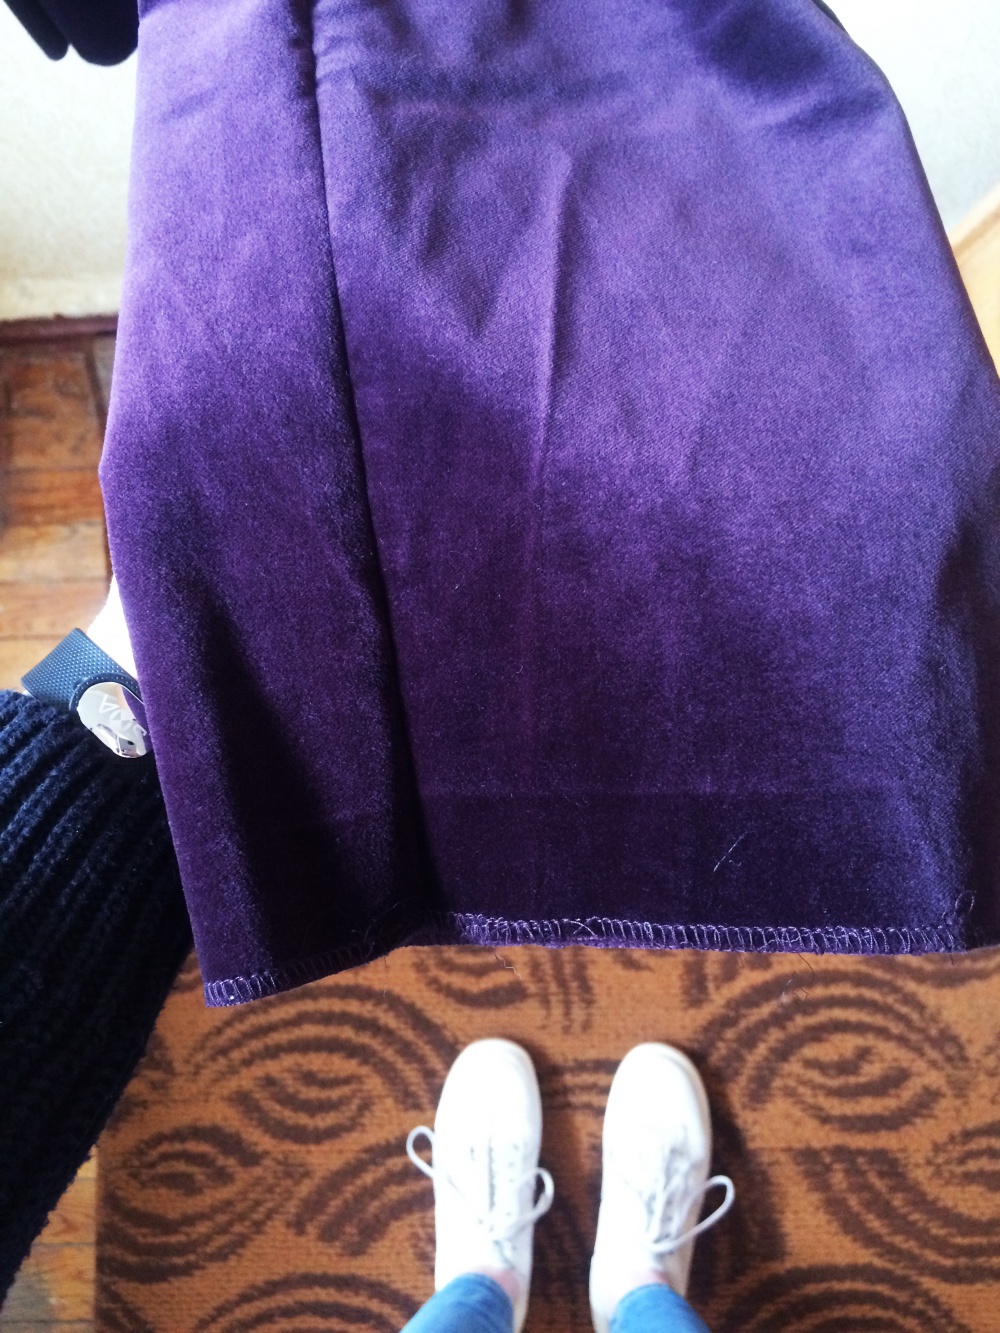 Новые бархатные брюки Karen Millen цвета aubergine (баклажан)